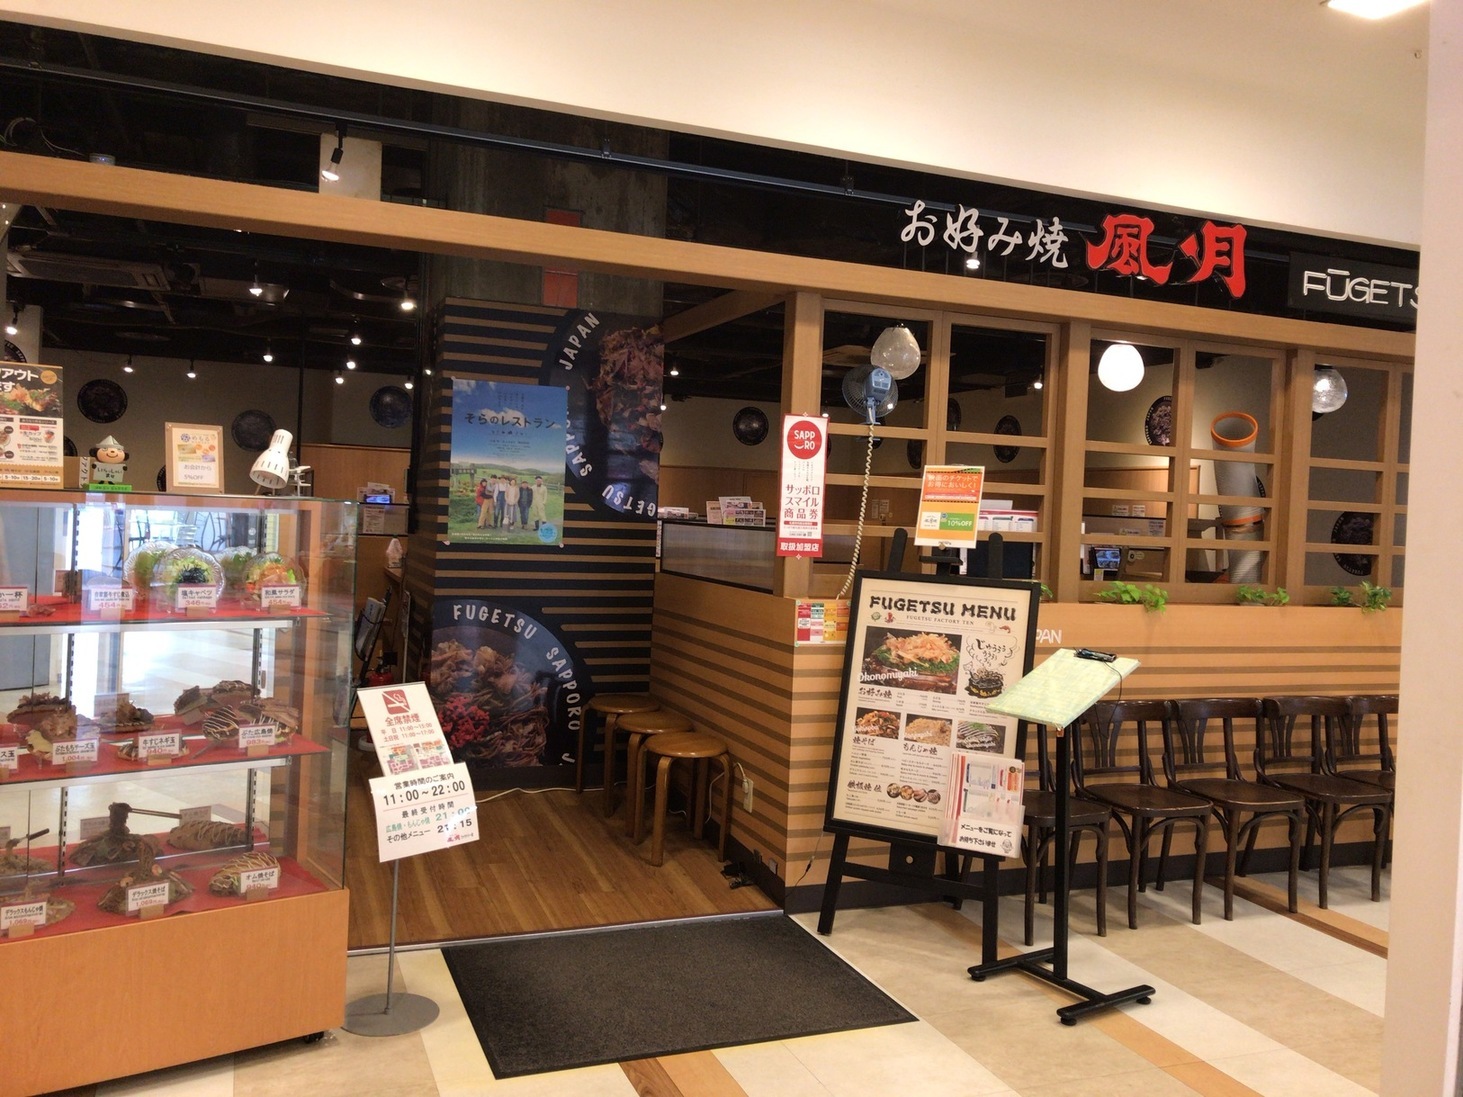 札幌のランチのおすすめ店30選　7位:お好み焼・焼そば 風月 ファクトリー店